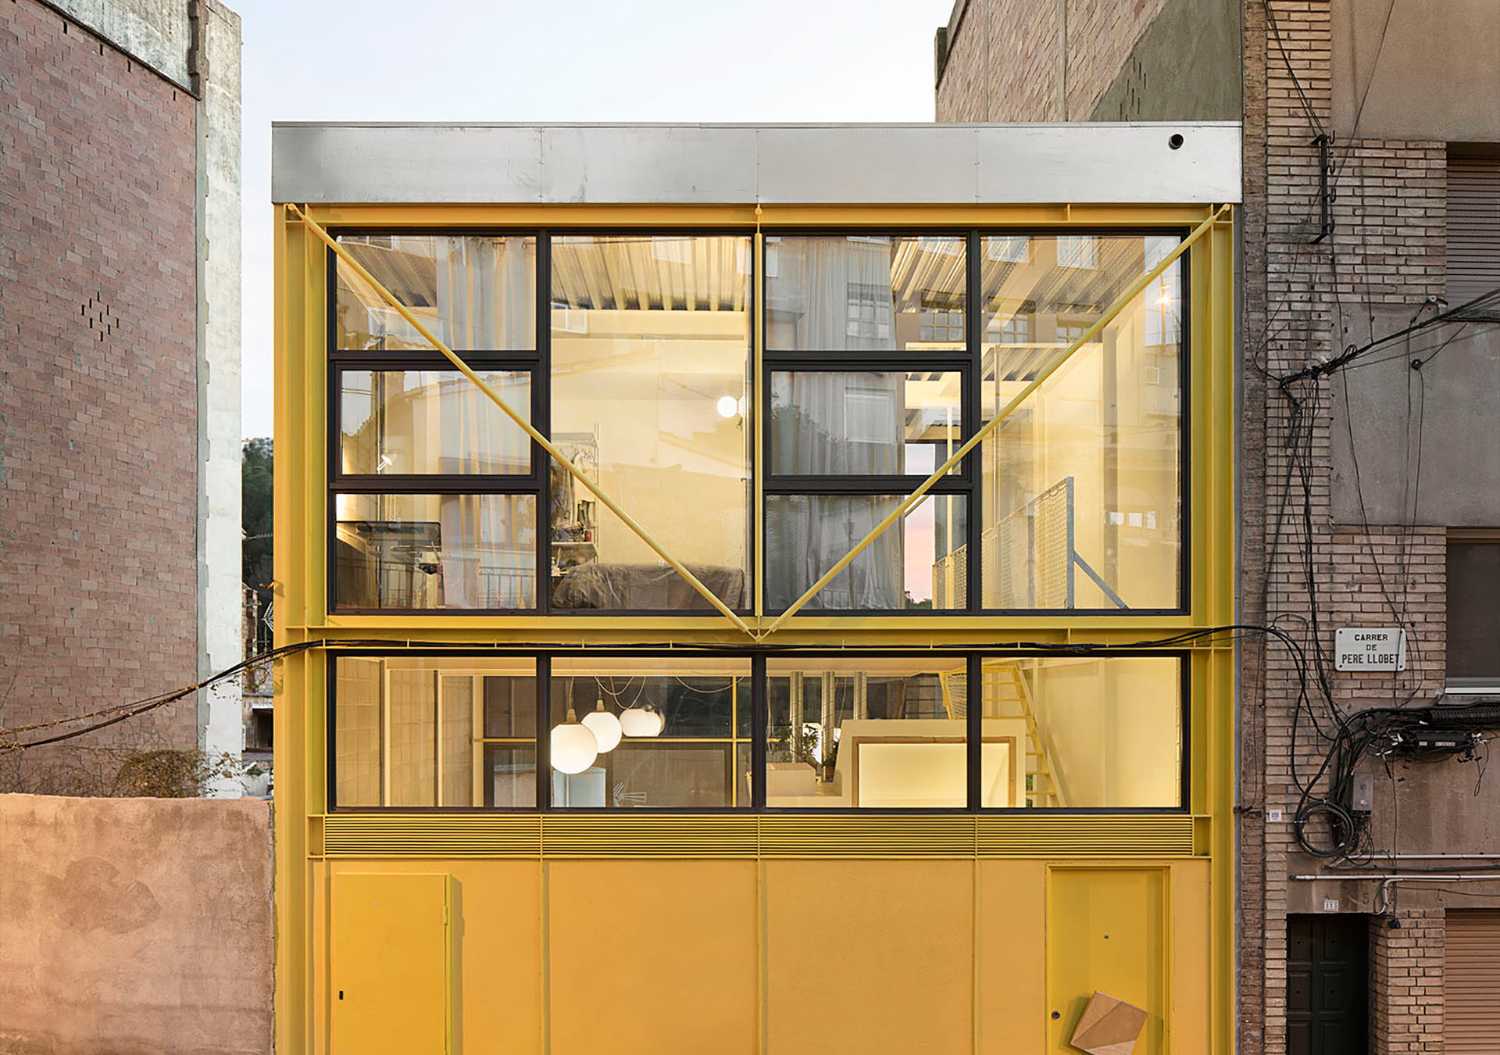 Giallo per una struttura metallica che “cattura” lo spazio per una casa al centro di Barcellona